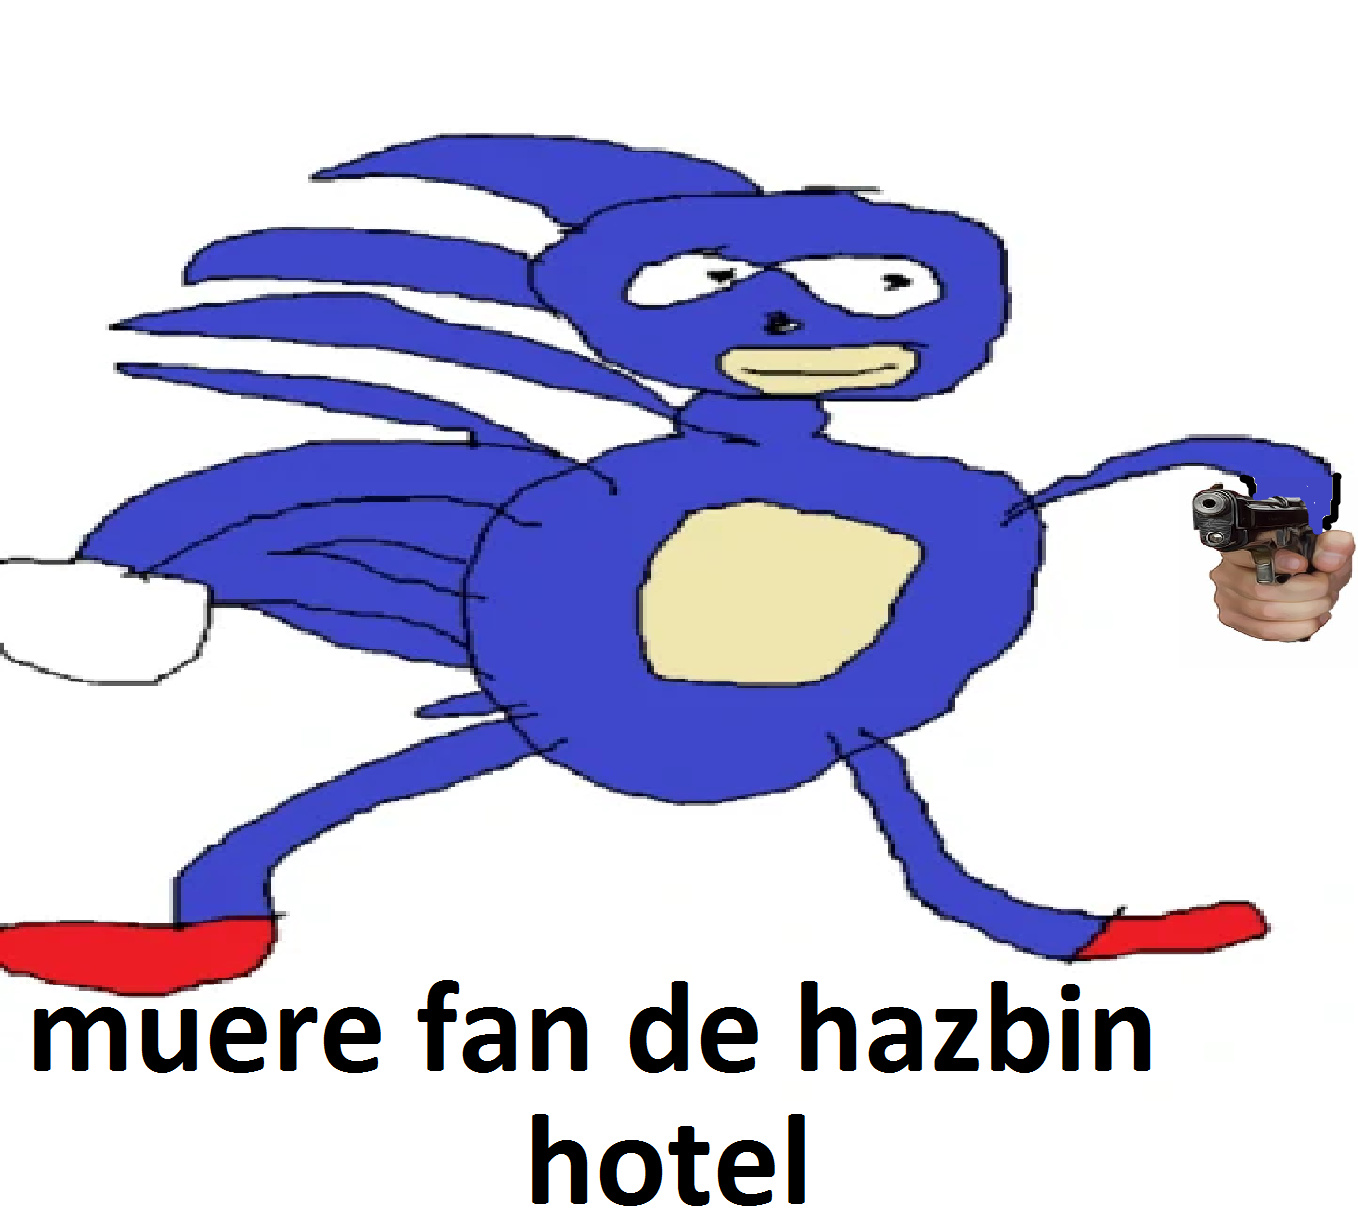 sanic odia a los fans de hazbin hotel - meme